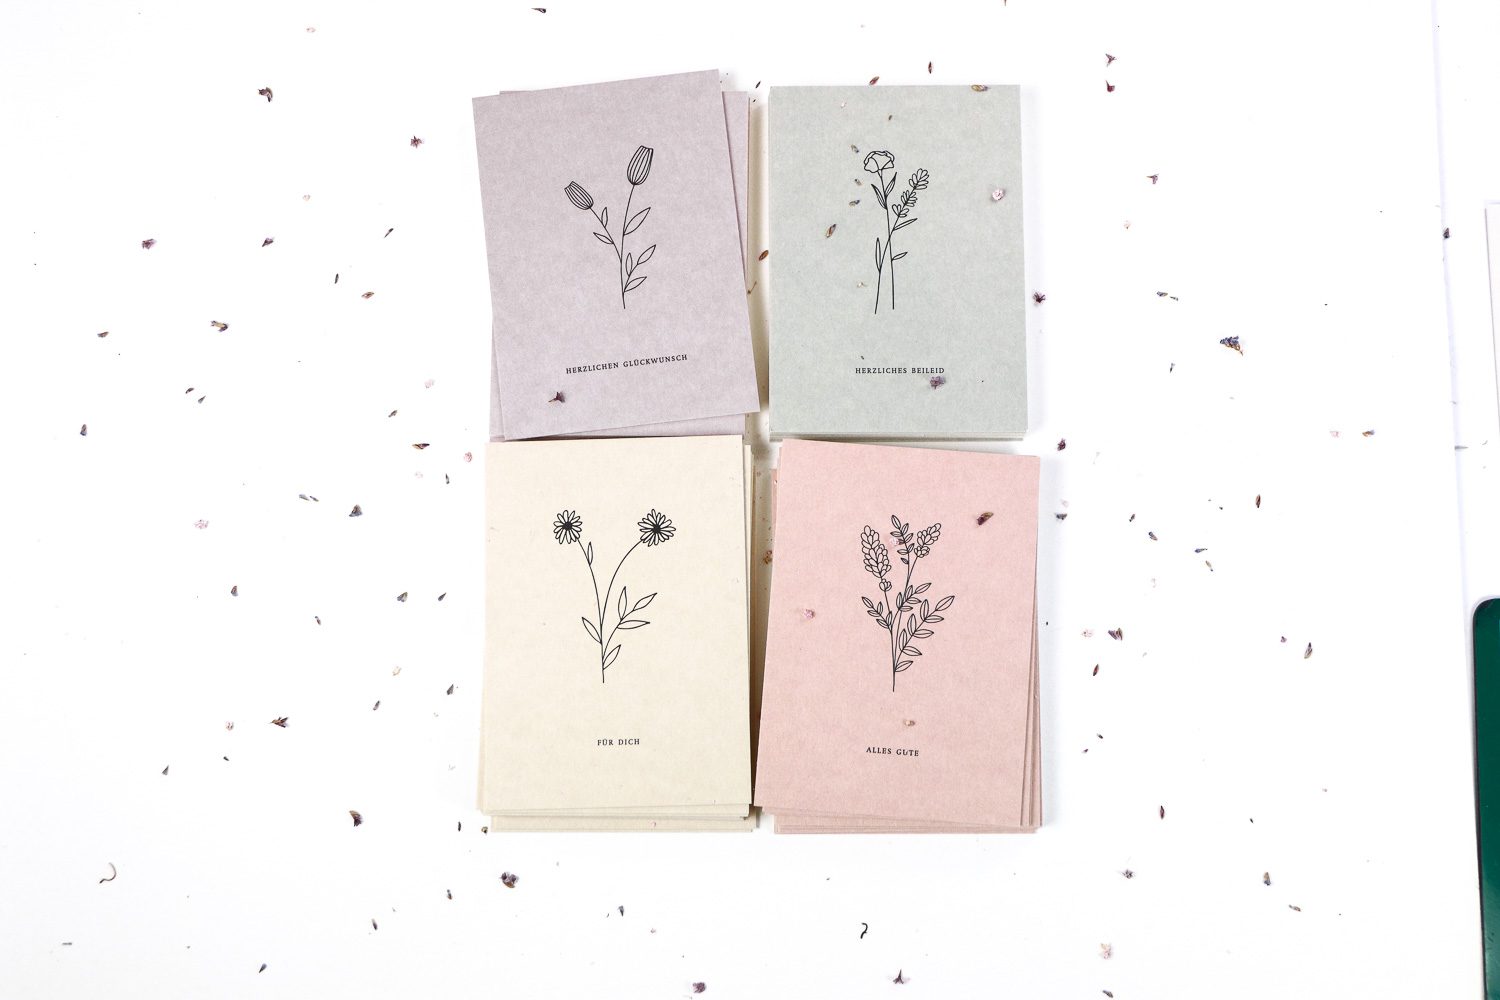 Set mit vier floralen Grusskarten für verschiedene Anlässe wie Geburtstag, Beileid, Gute Wünsche